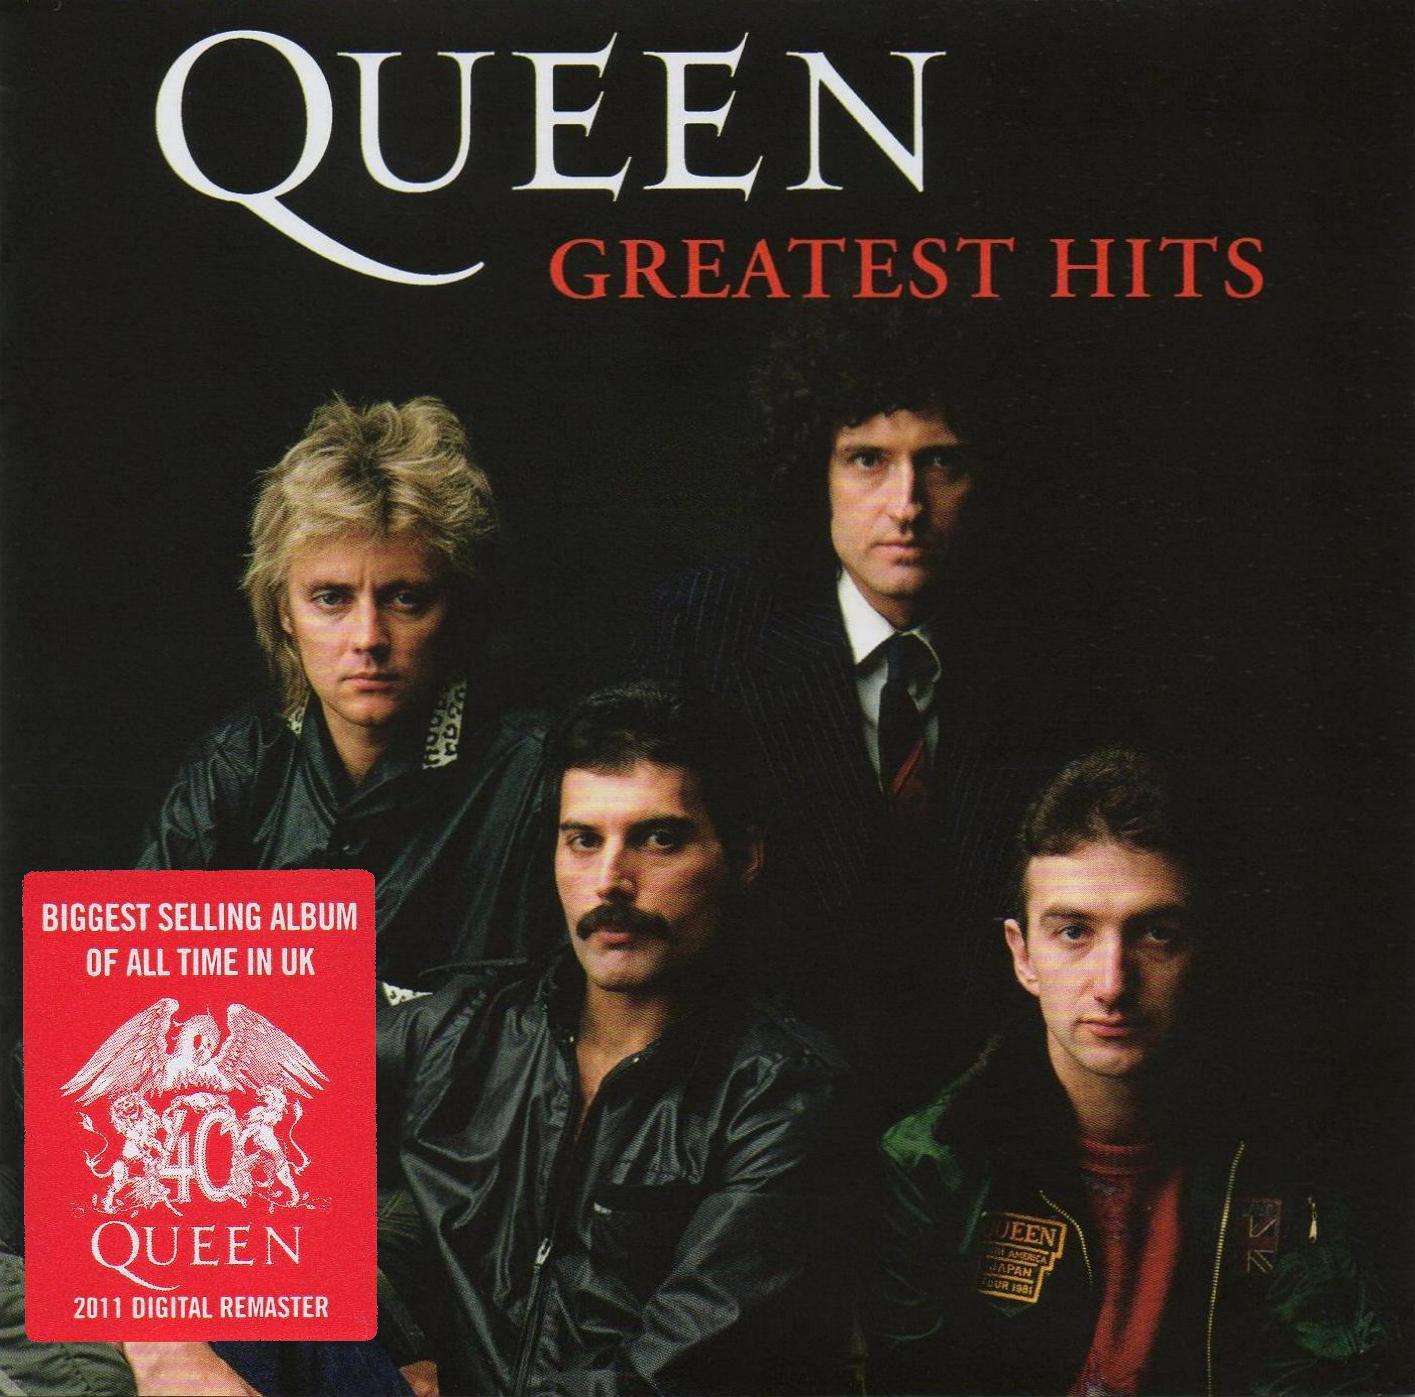 Queen best hits. LP Queen: Greatest Hits. Queen Greatest Hits 1981 CD. Queen Greatest Hits 1 CD. Queen Greatest Hits 1 CD обложка обложка.